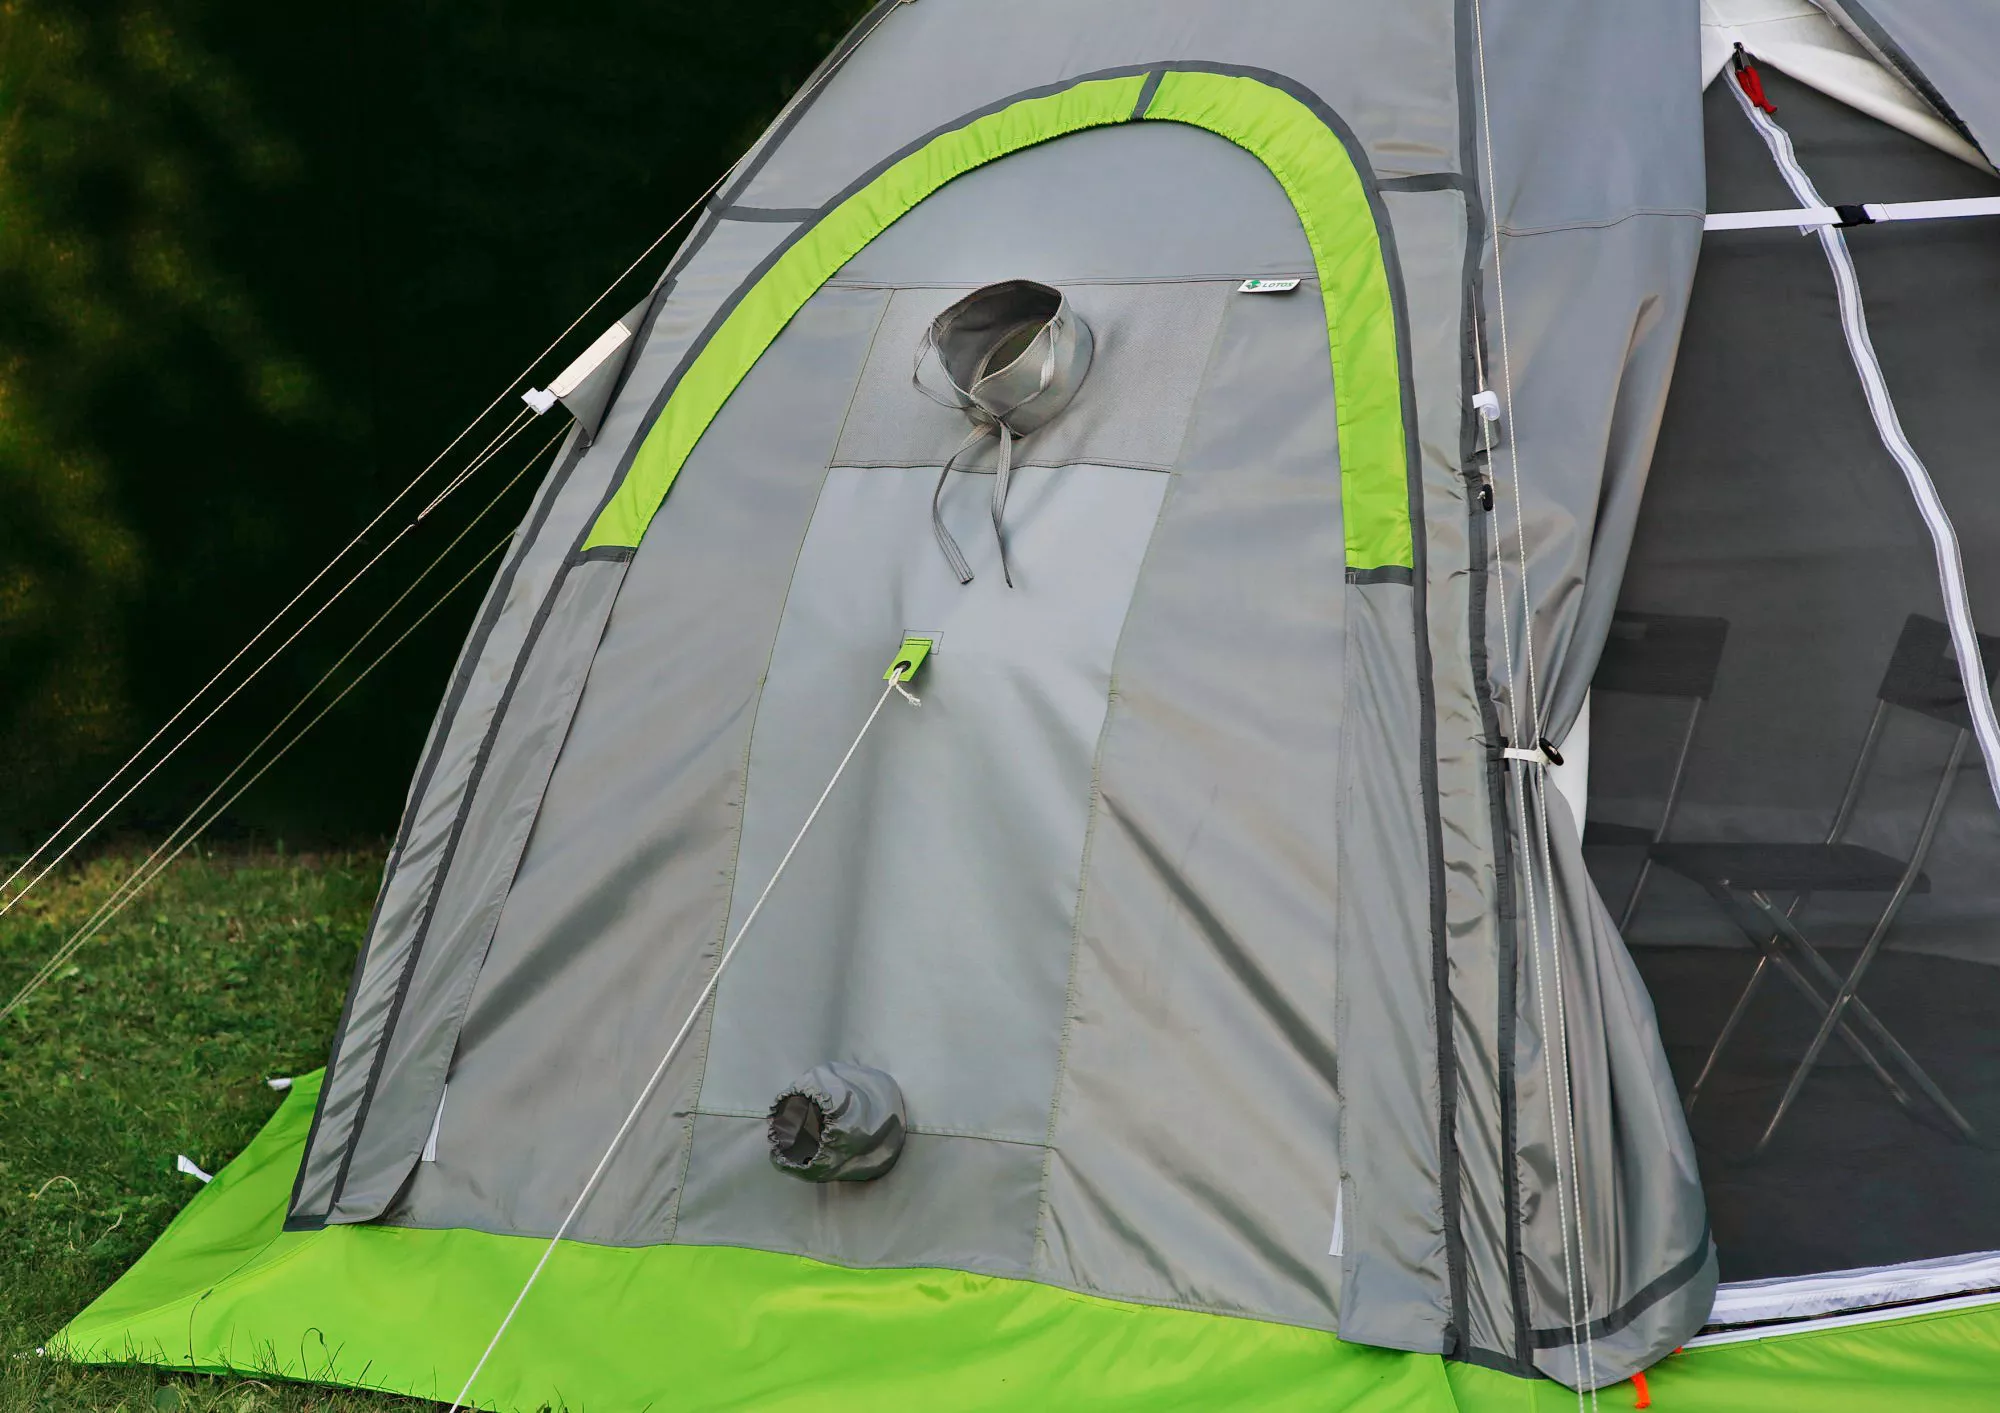 Стенка огнеупорная ЛОТОС 5 (кремнезем) установленная на универсальной палатке Лотос 5 Универсал Спорт